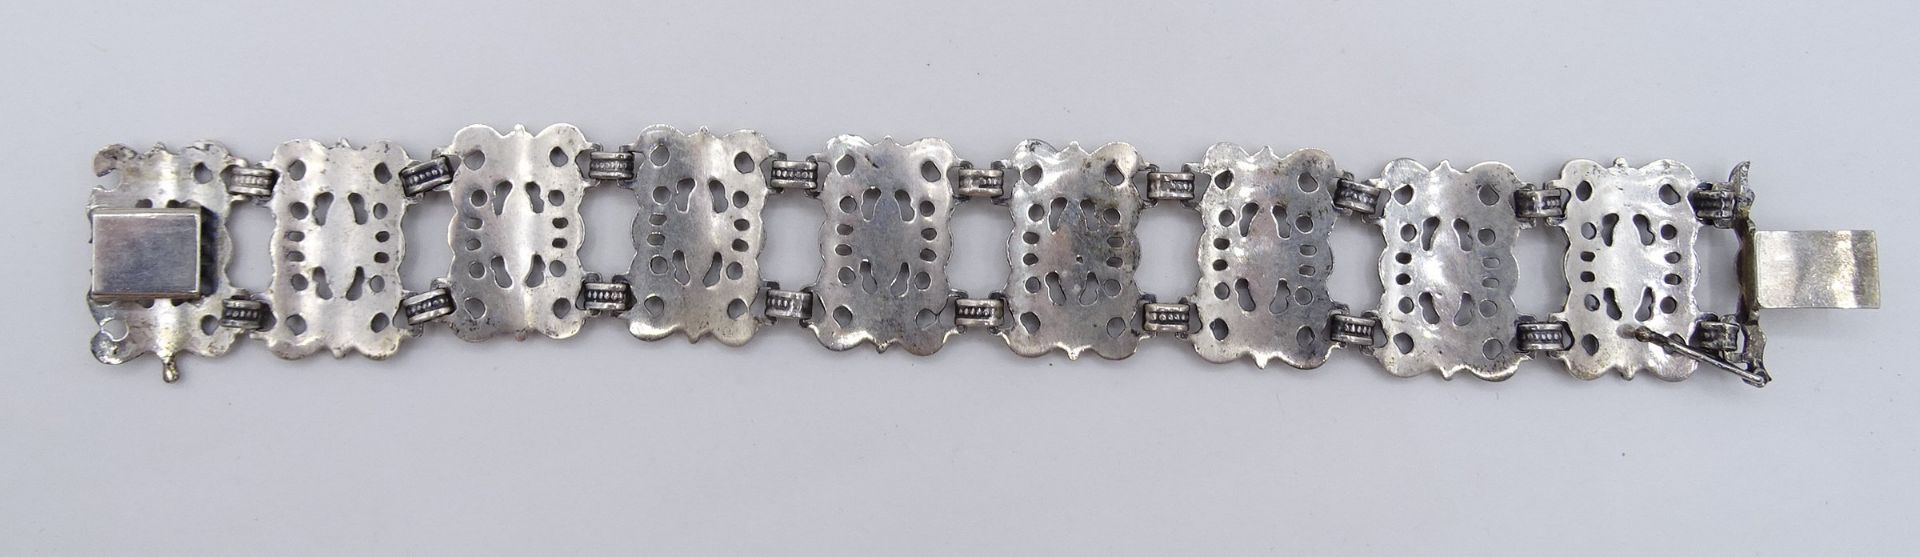 Armband "BAS", 925er-Silber, mit Steckverschluss, B. 2,3 cm, L. 18,5 cm, 35 gr., mit Altersspuren, - Image 4 of 4